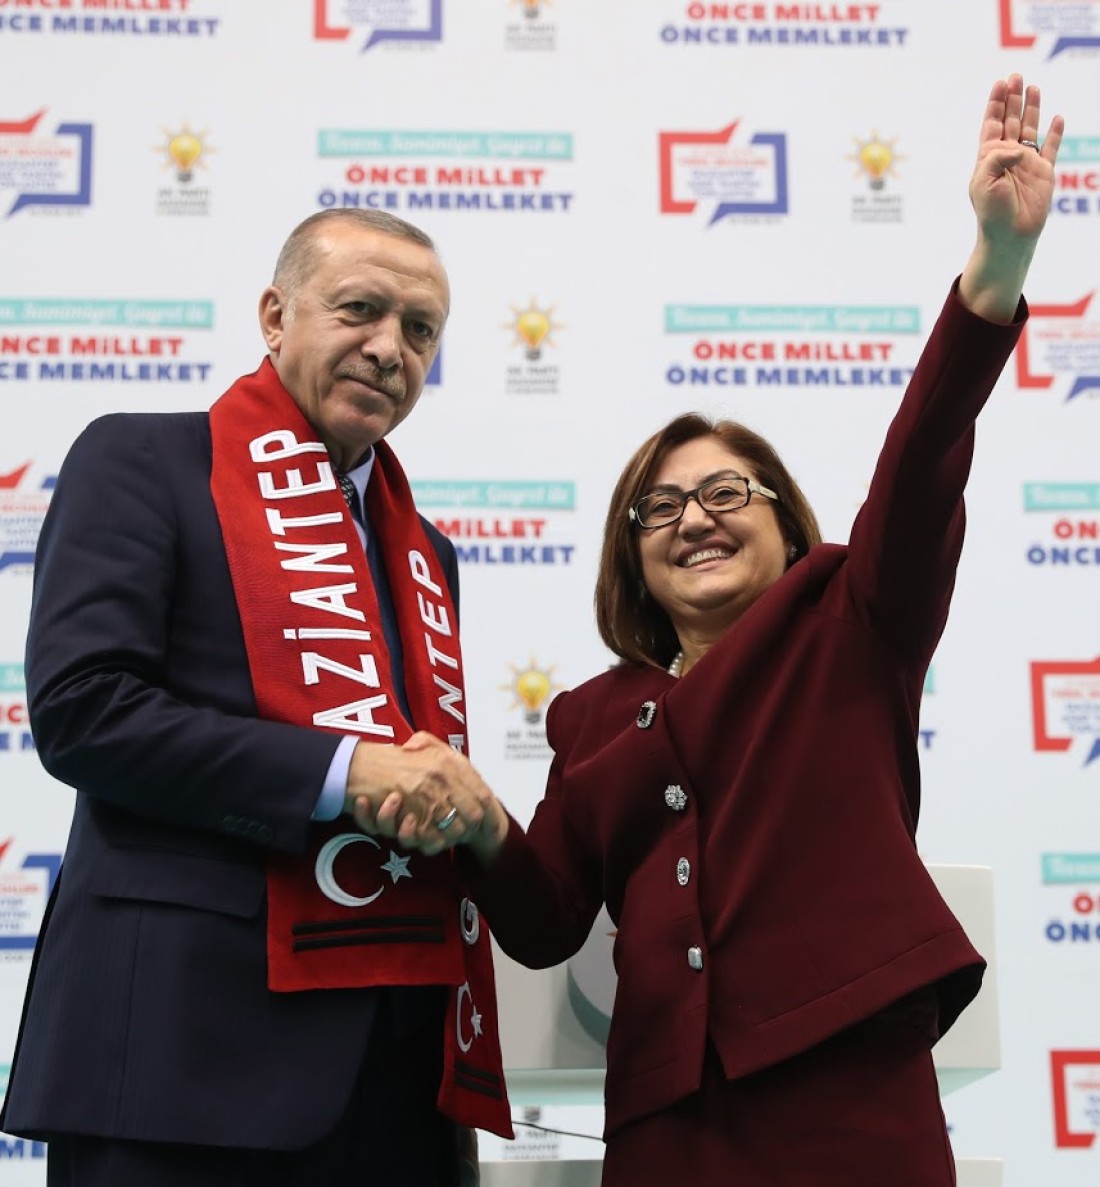 Cumhurbaşkanı Erdoğan Fatma Şahin’in projelerini övgüyle örnek gösterdi